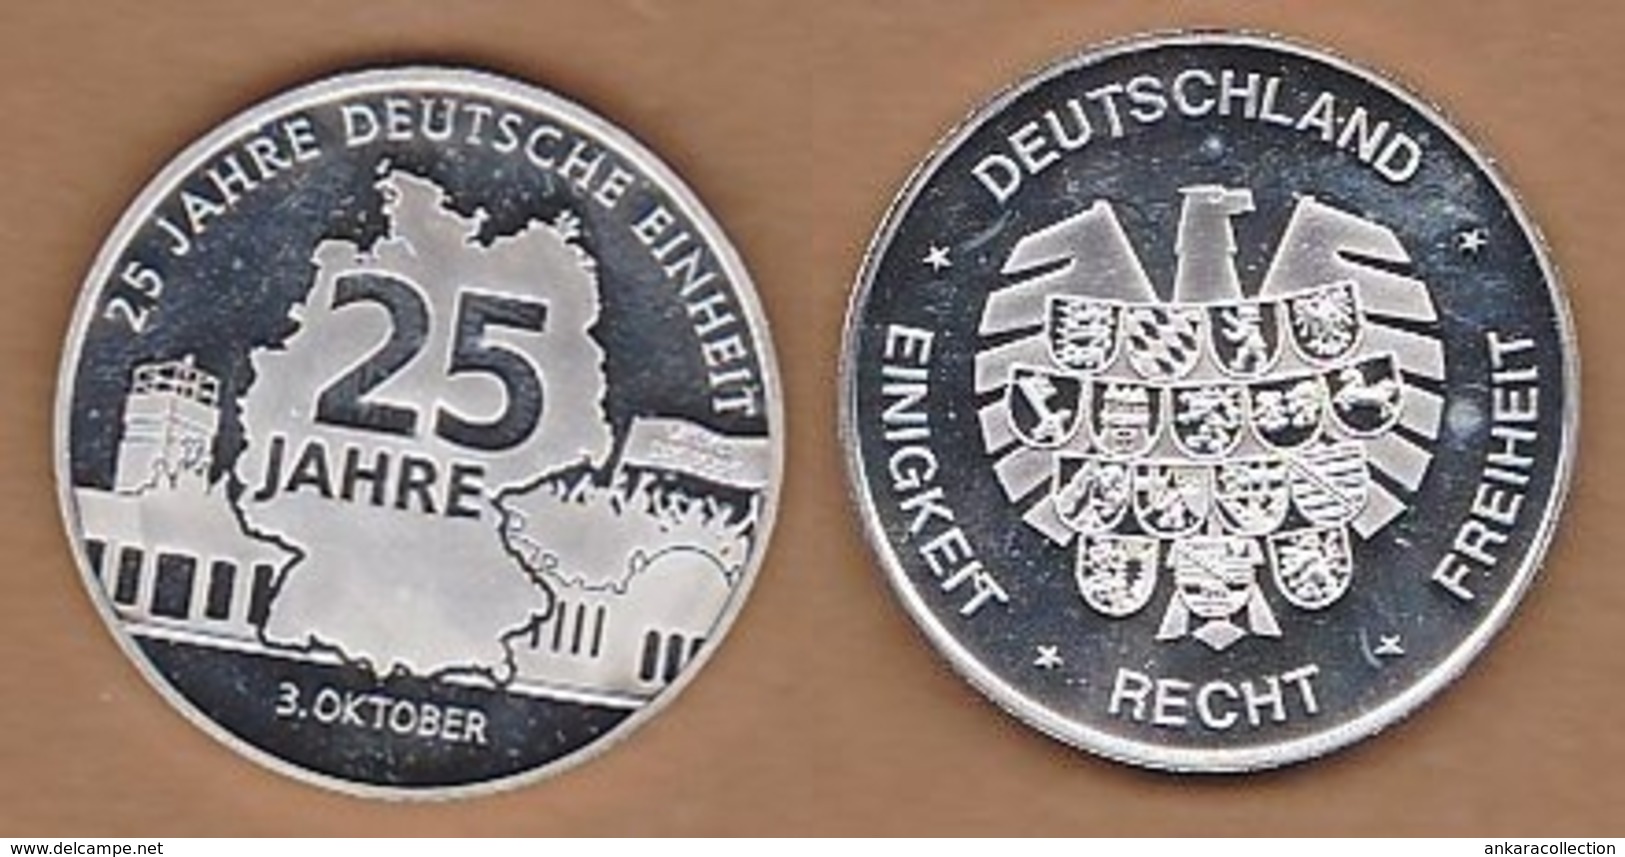 AC - 25 JAHRE DEUTSCHE EINHEITT 3 OKTOBER DEUTSCHLAND EINIGKEIT RECHT FREIHEIT 25 YEARS OF GERMAN UNITY MEDAL - MEDALLIO - Professionals/Firms